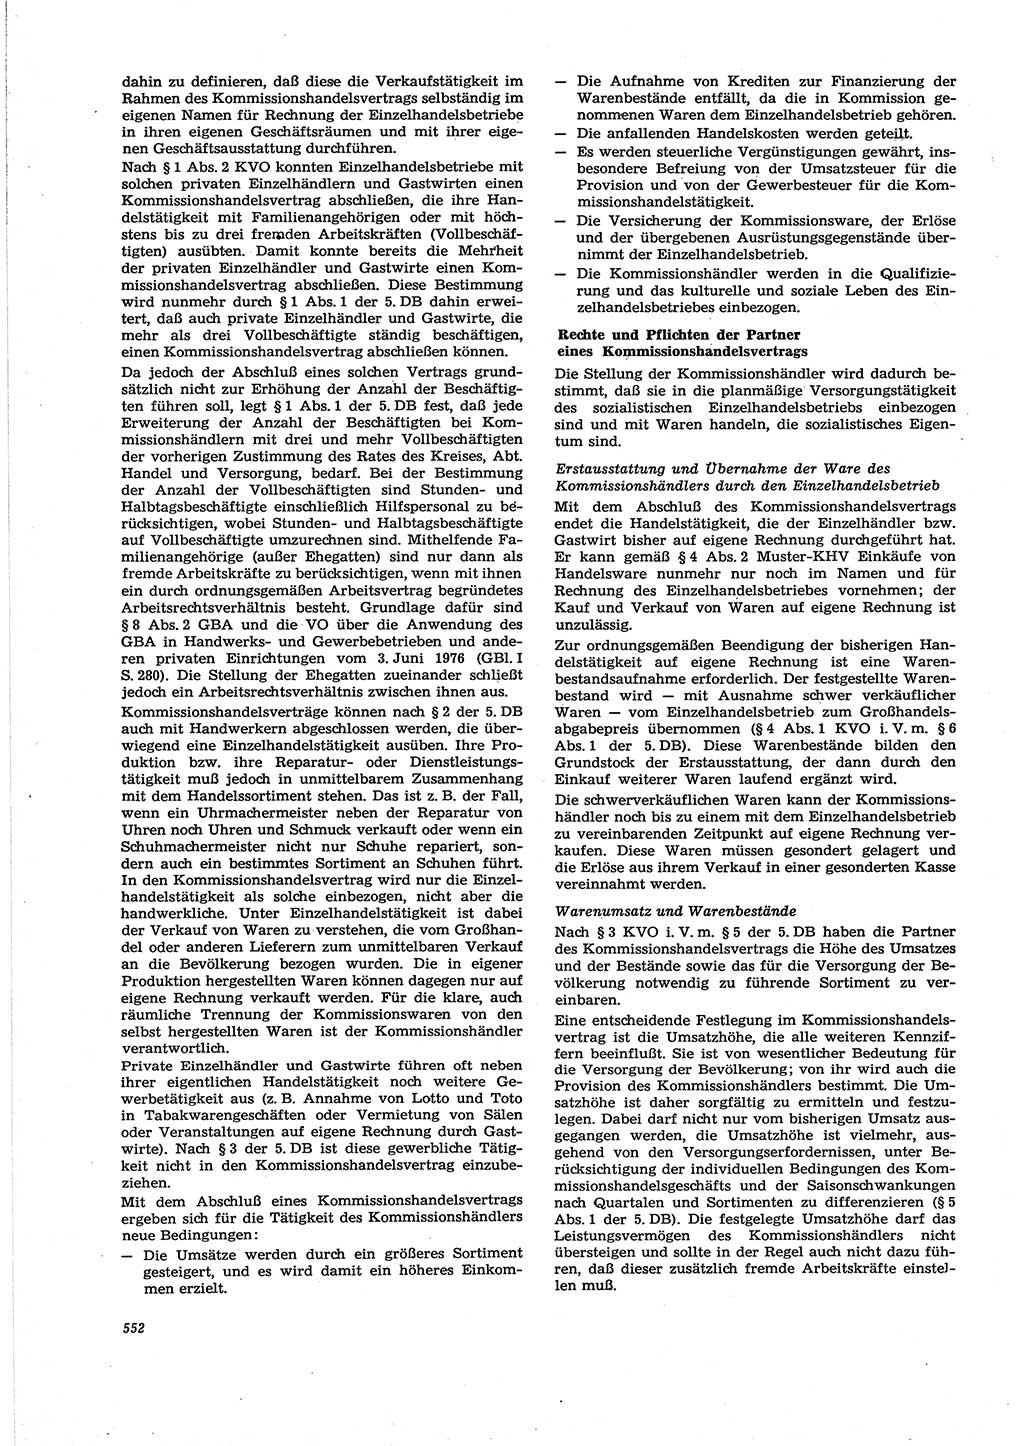 Neue Justiz (NJ), Zeitschrift für Recht und Rechtswissenschaft [Deutsche Demokratische Republik (DDR)], 30. Jahrgang 1976, Seite 552 (NJ DDR 1976, S. 552)